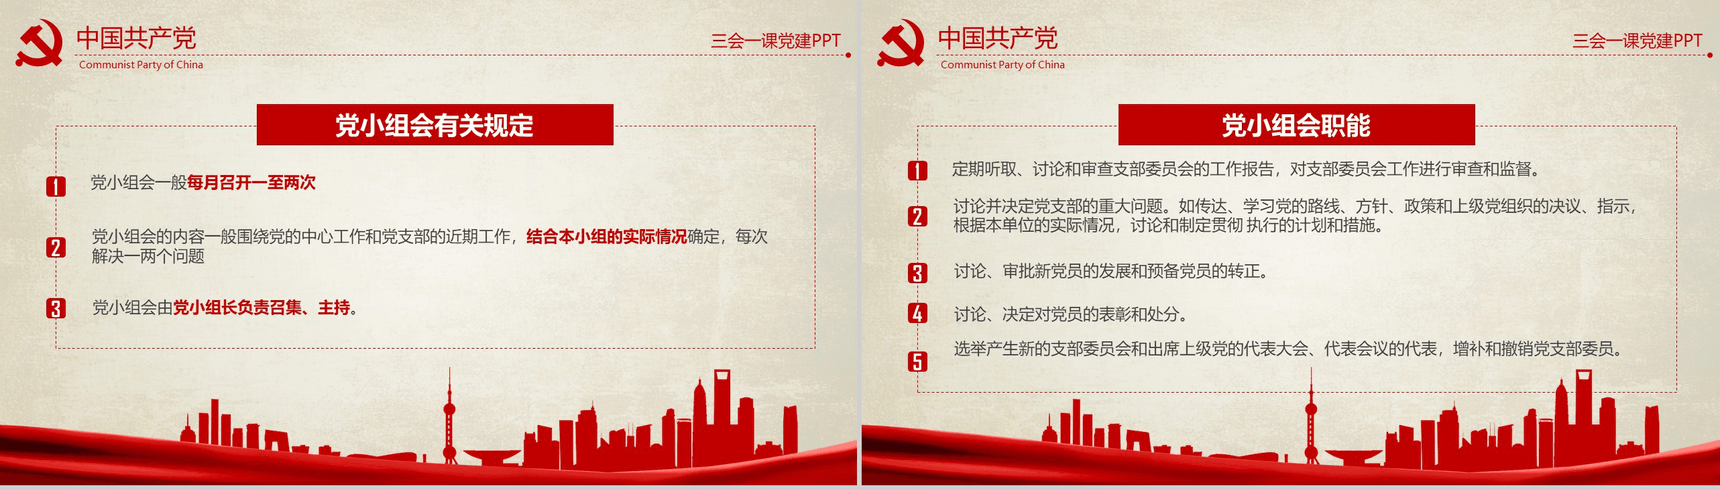 农村基层党建知识红色反腐思想指南和行动纲领学习教育PPT模板-10